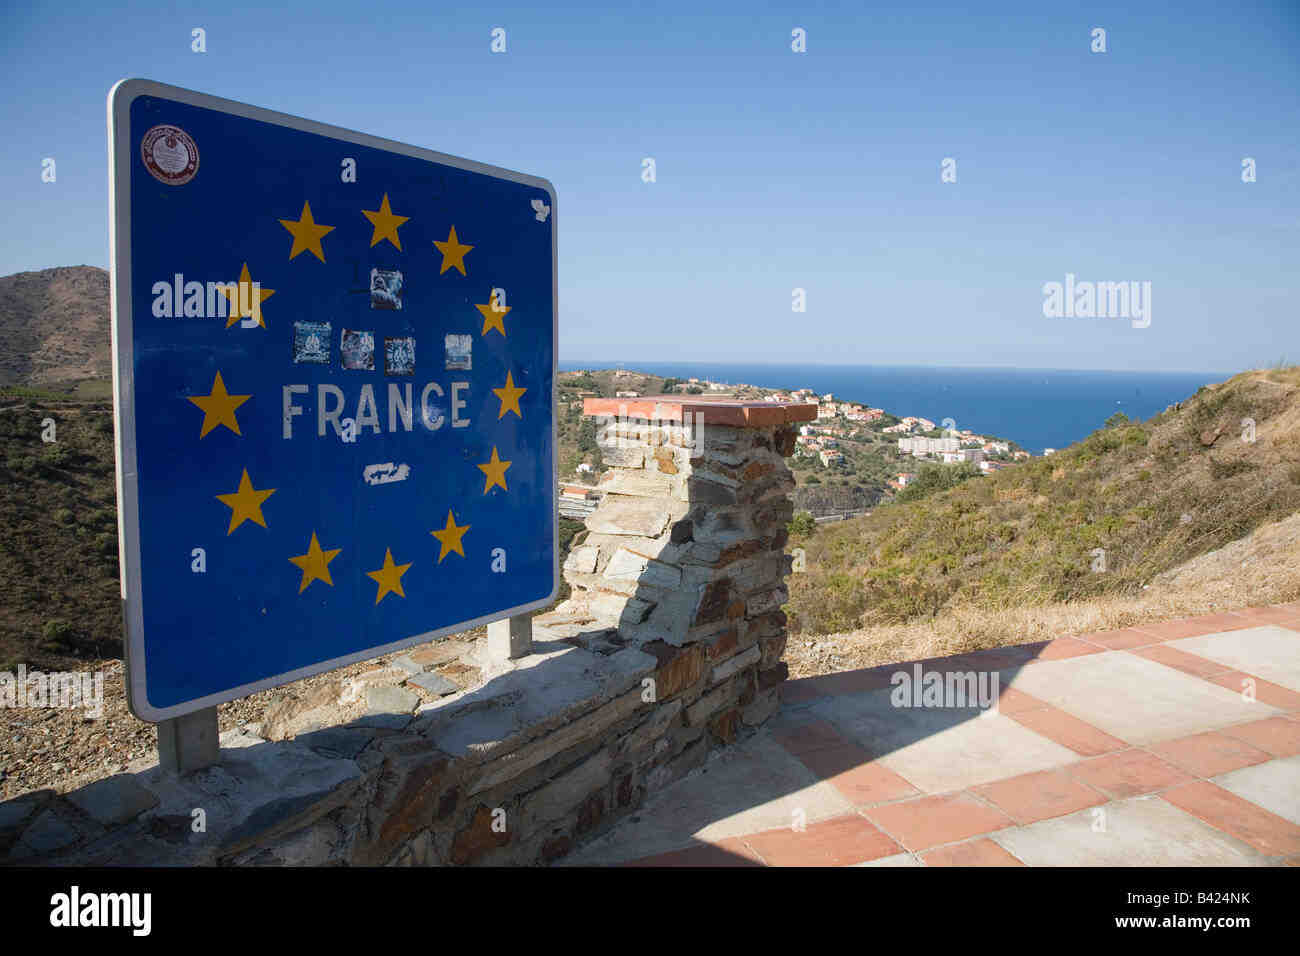 Quelle est la ville française la plus proche de la frontière espagnole ?